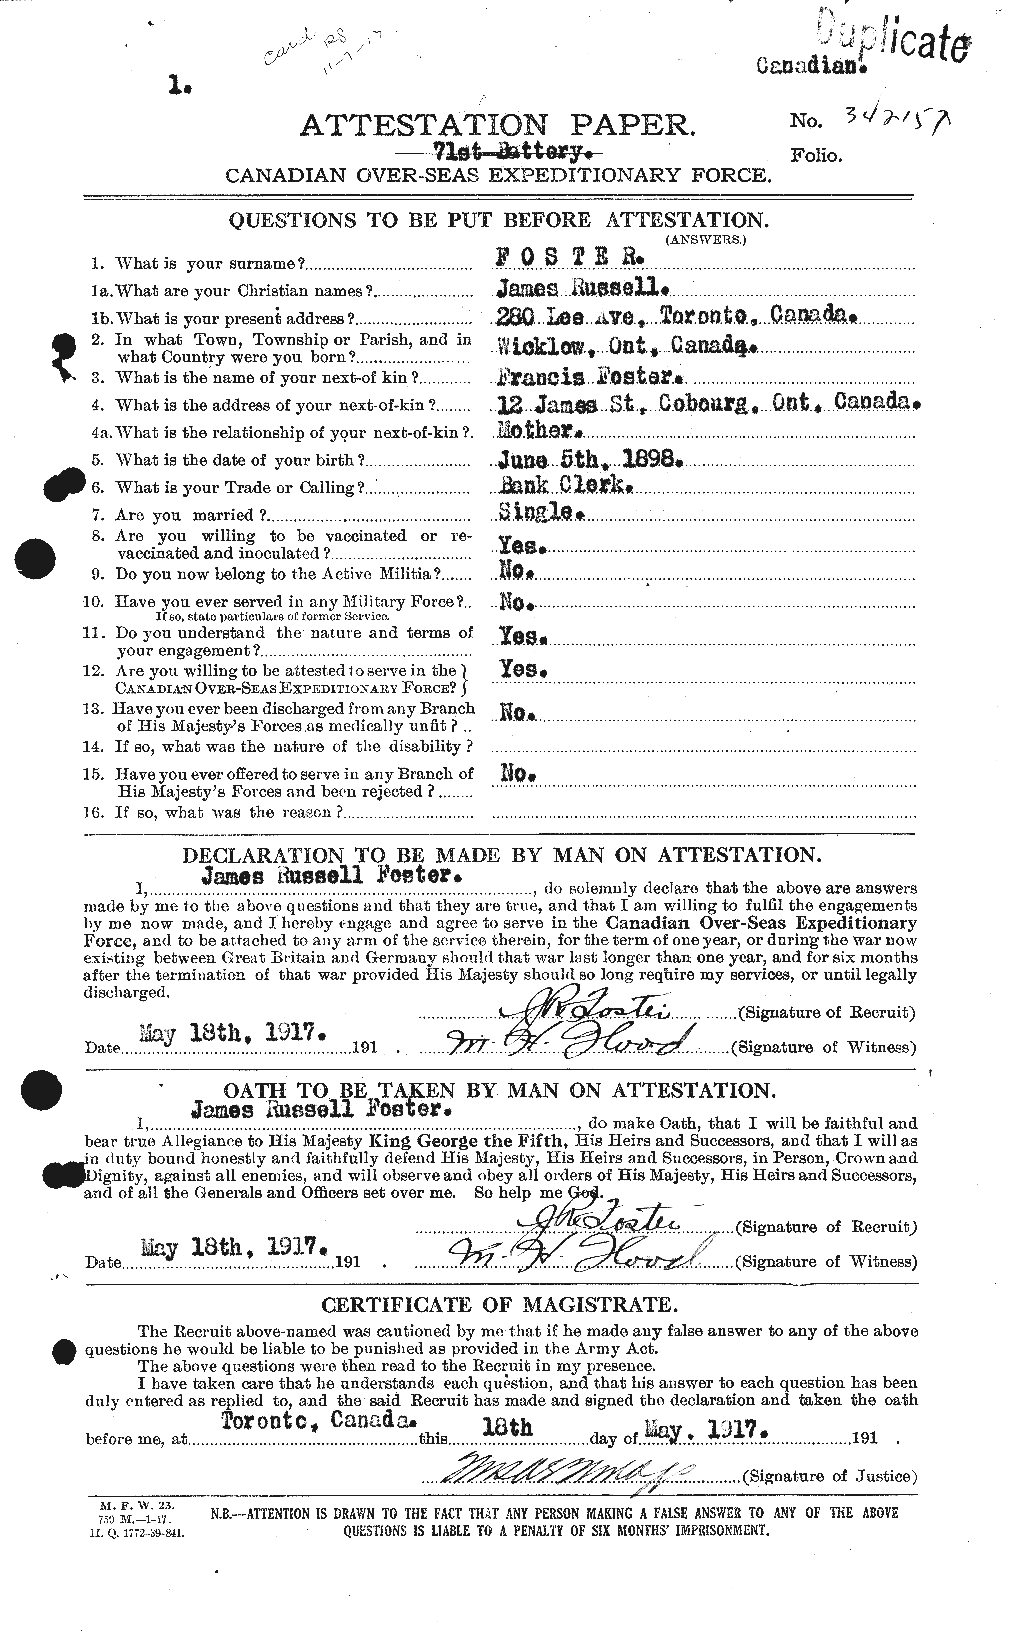 Dossiers du Personnel de la Première Guerre mondiale - CEC 333317a